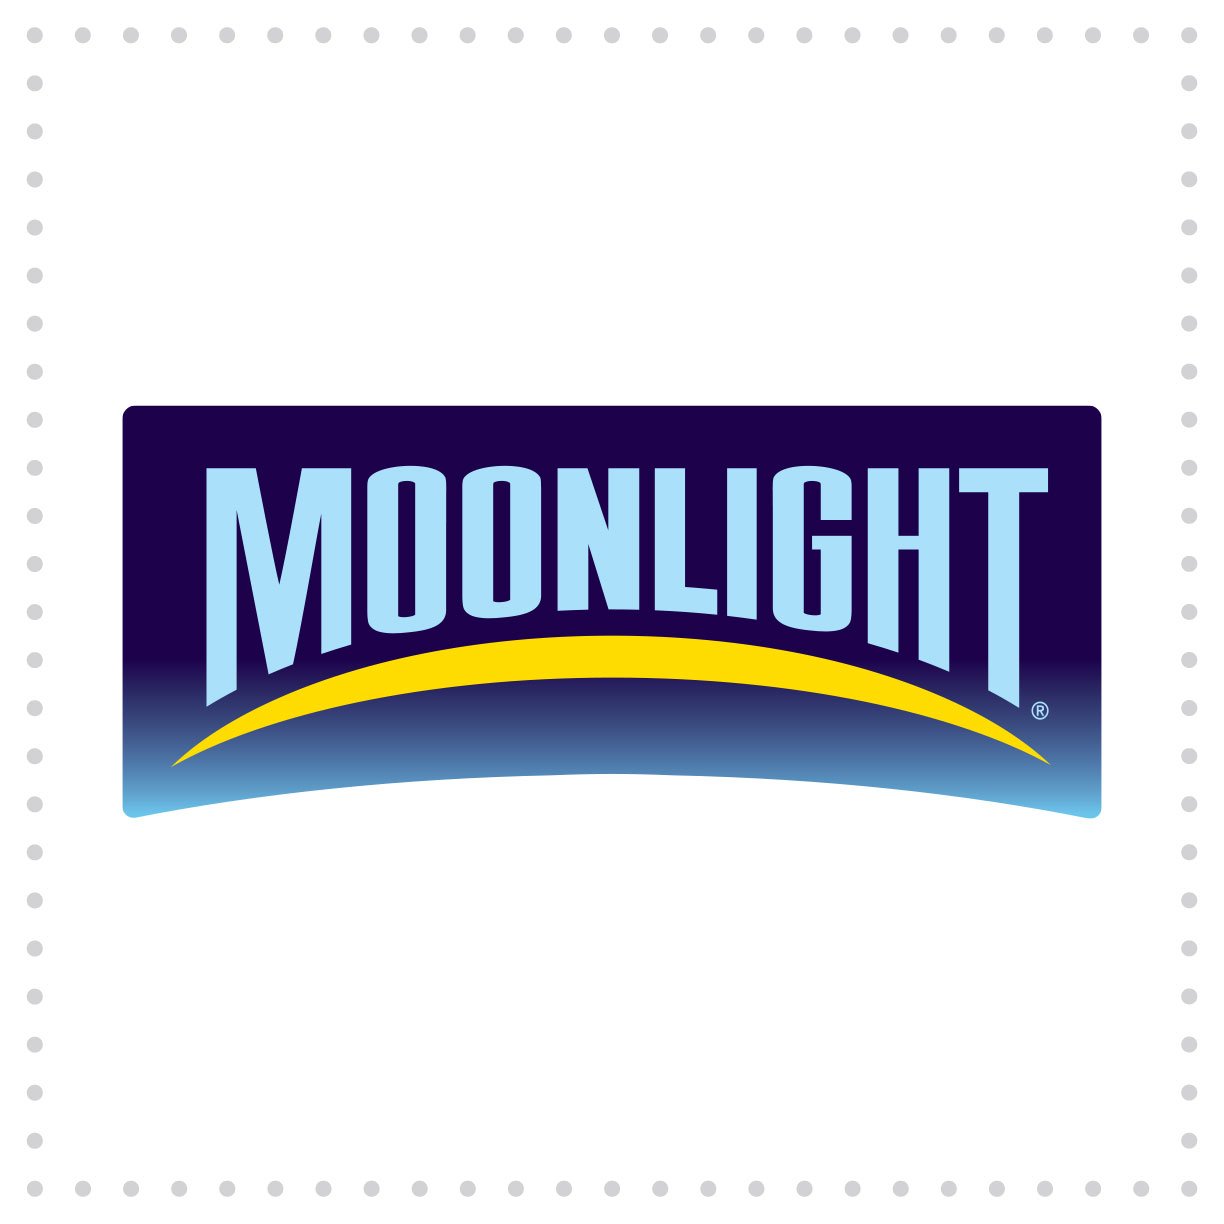 Ball-LogoDesign-Moonlight.jpg